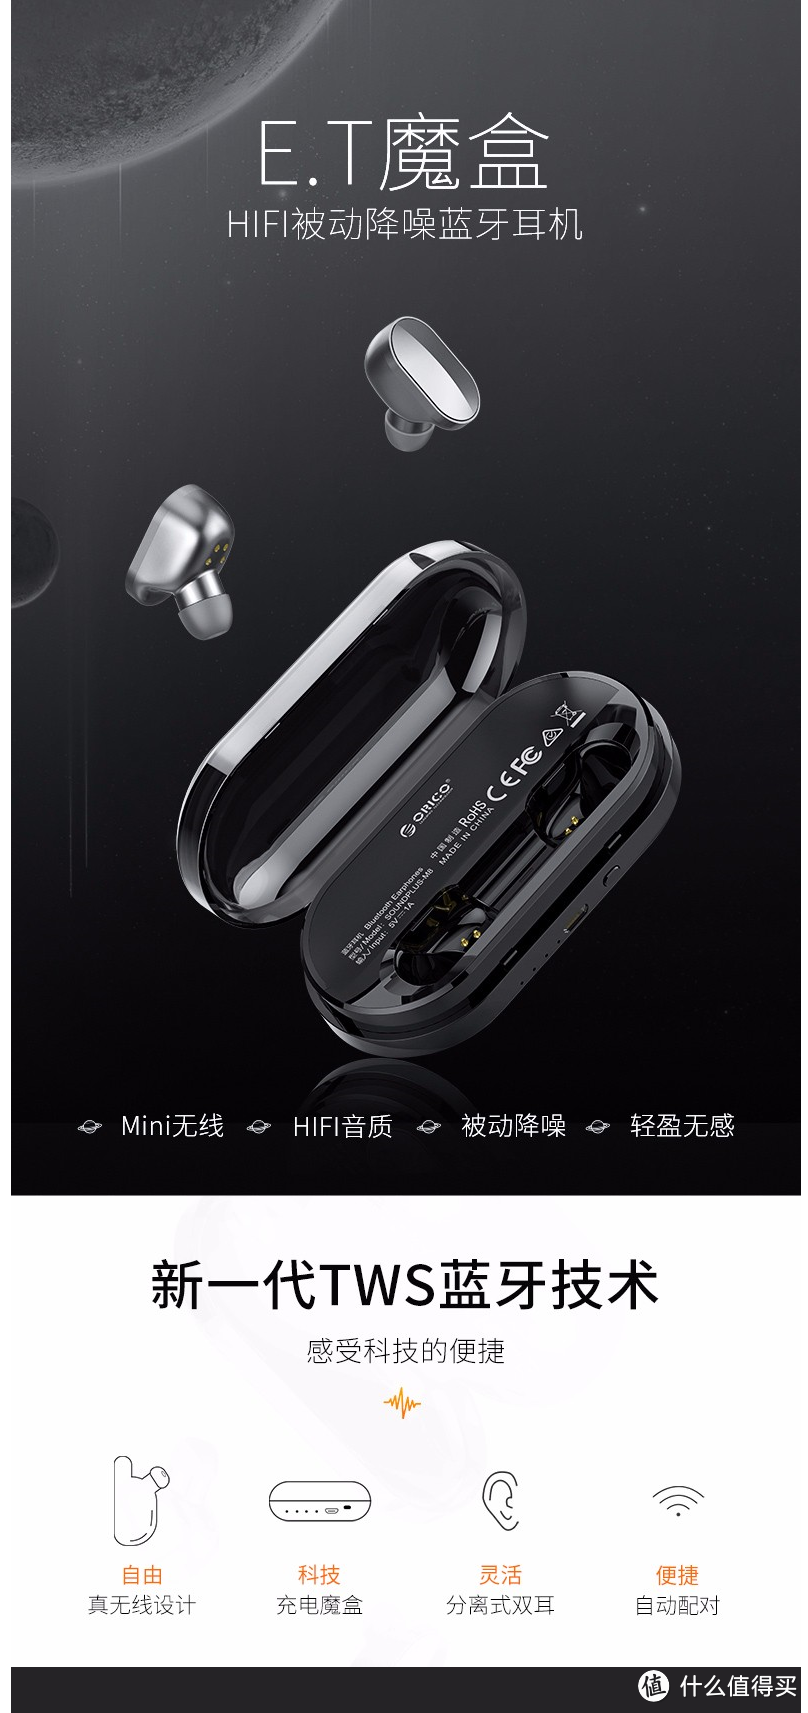 价格便宜量又足，高性价比的ORICO SOUND-M8蓝牙耳机